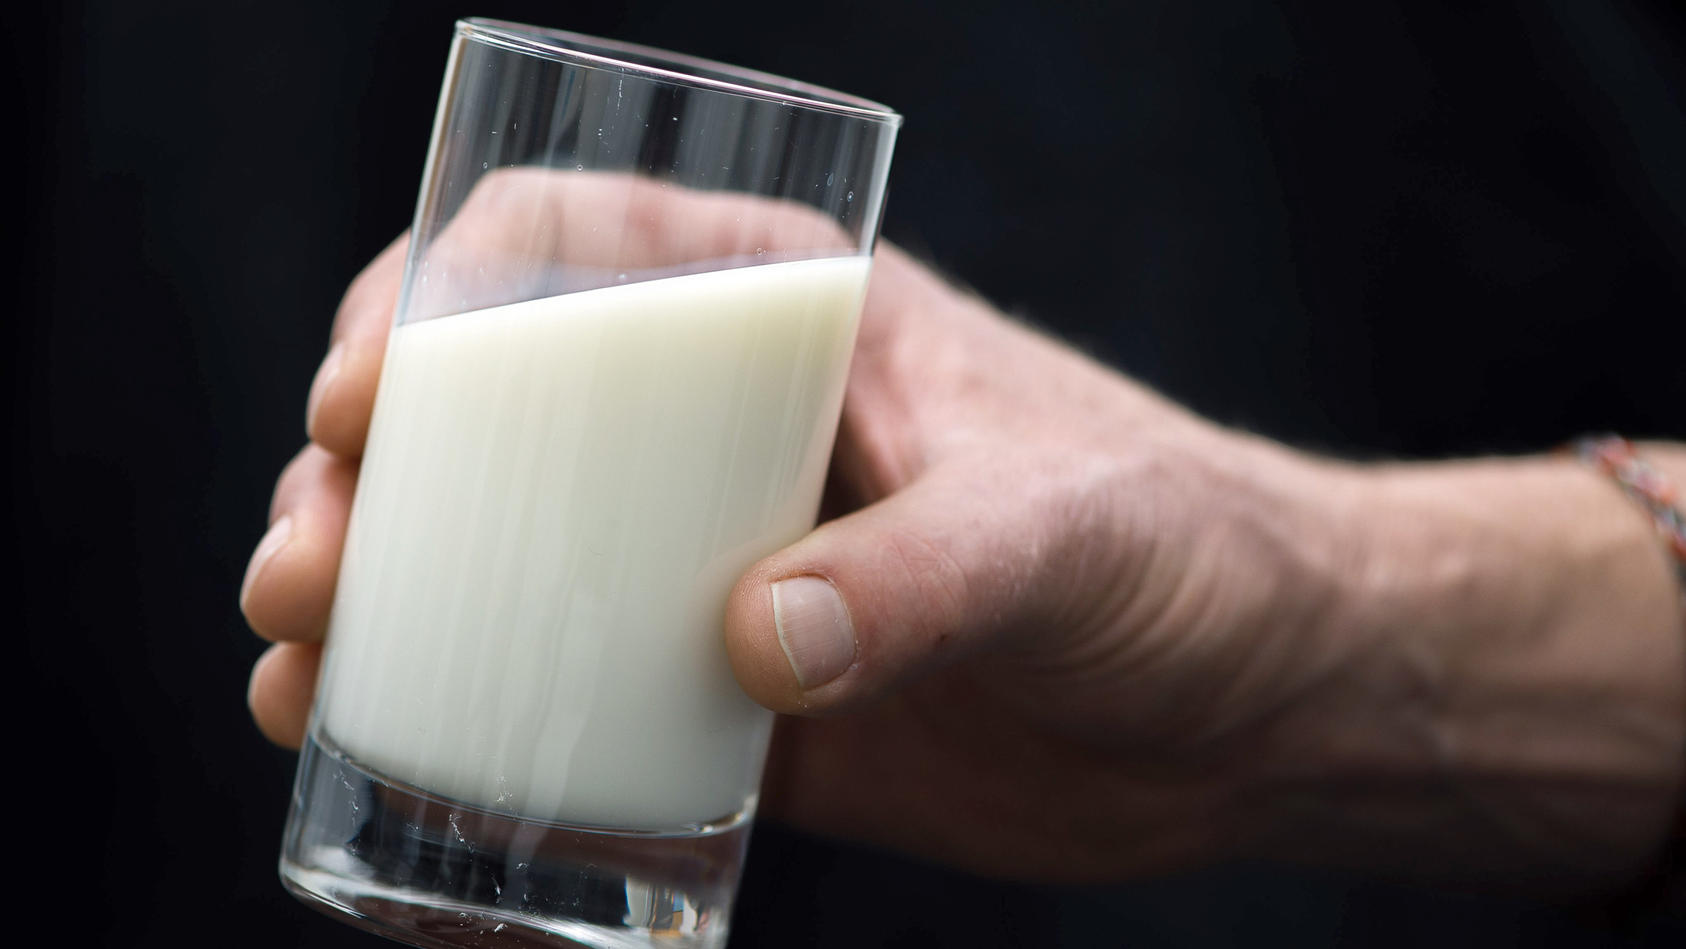 Eine britische Supermarktkette will kein Verfallsdatum mehr auf ihre Milch drucken